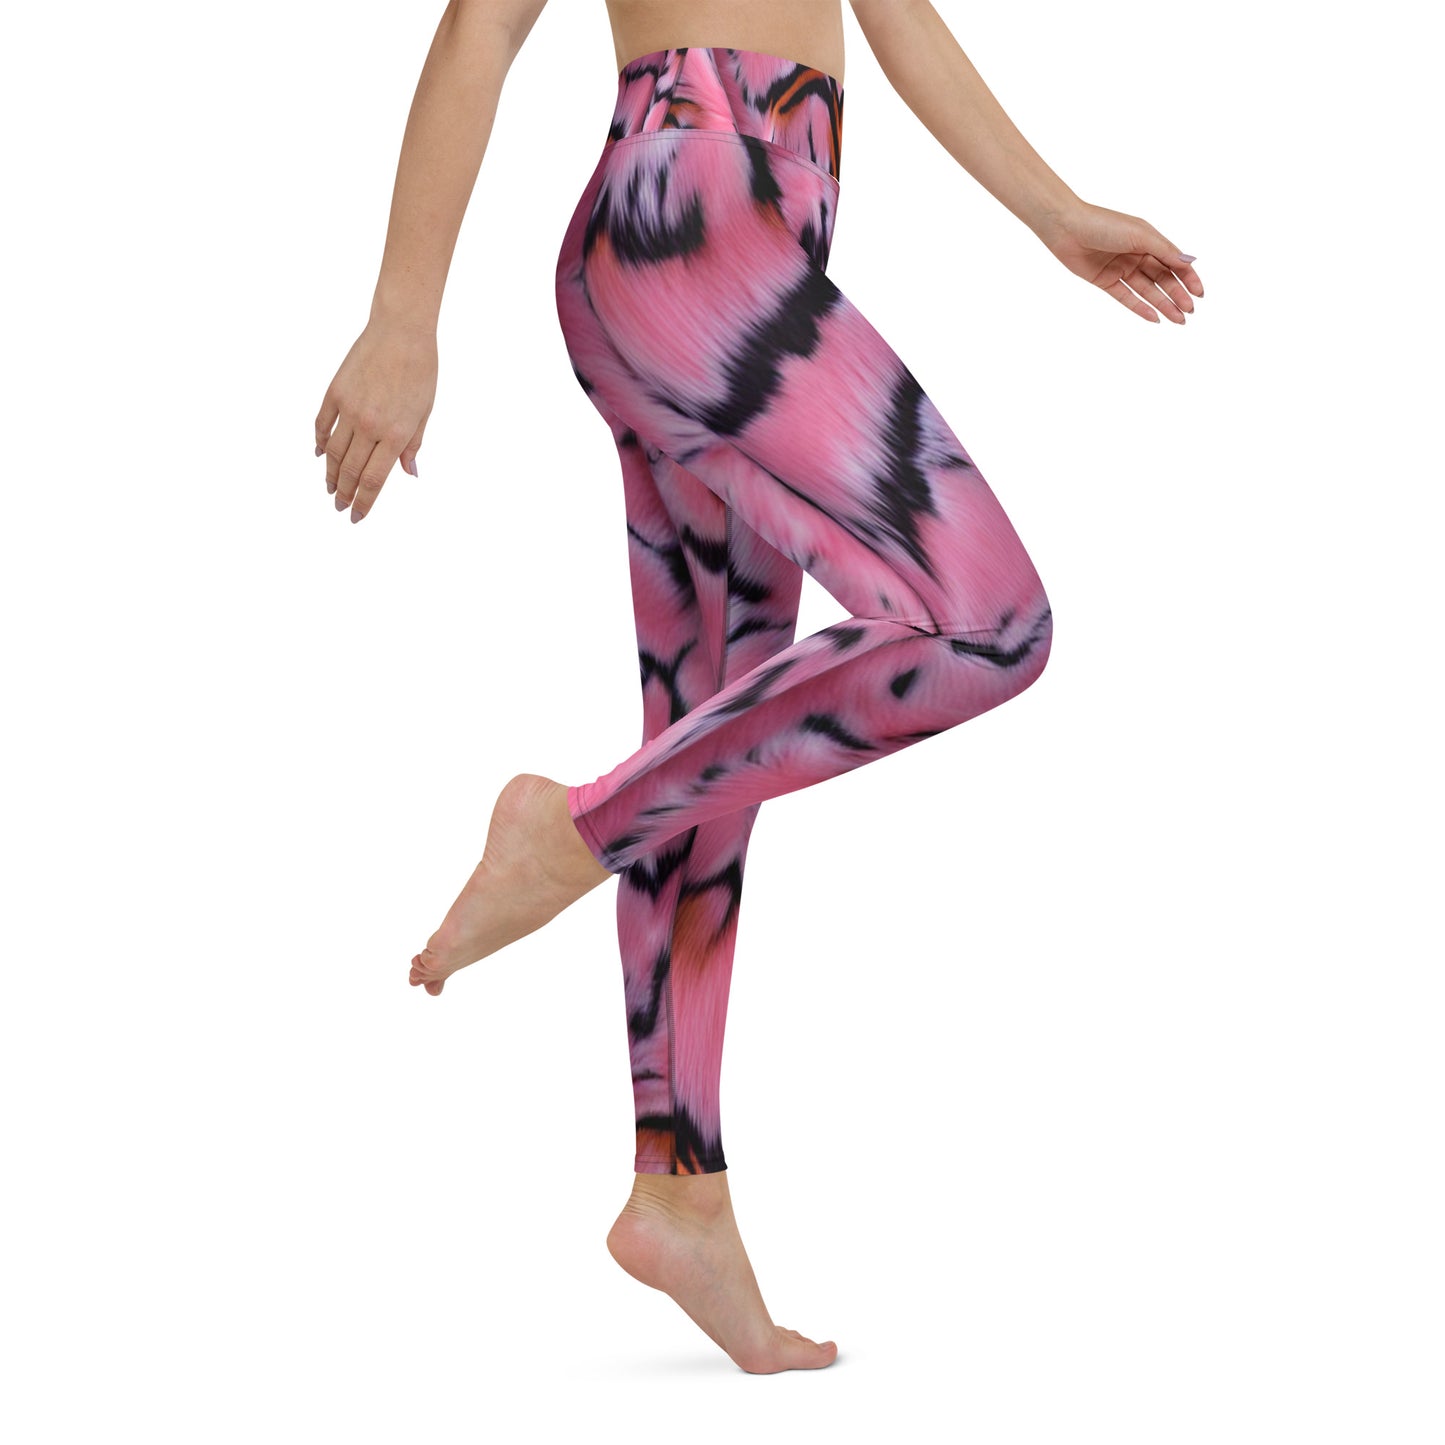 Pink Tiger Fur Custom Print Yoga Leggings